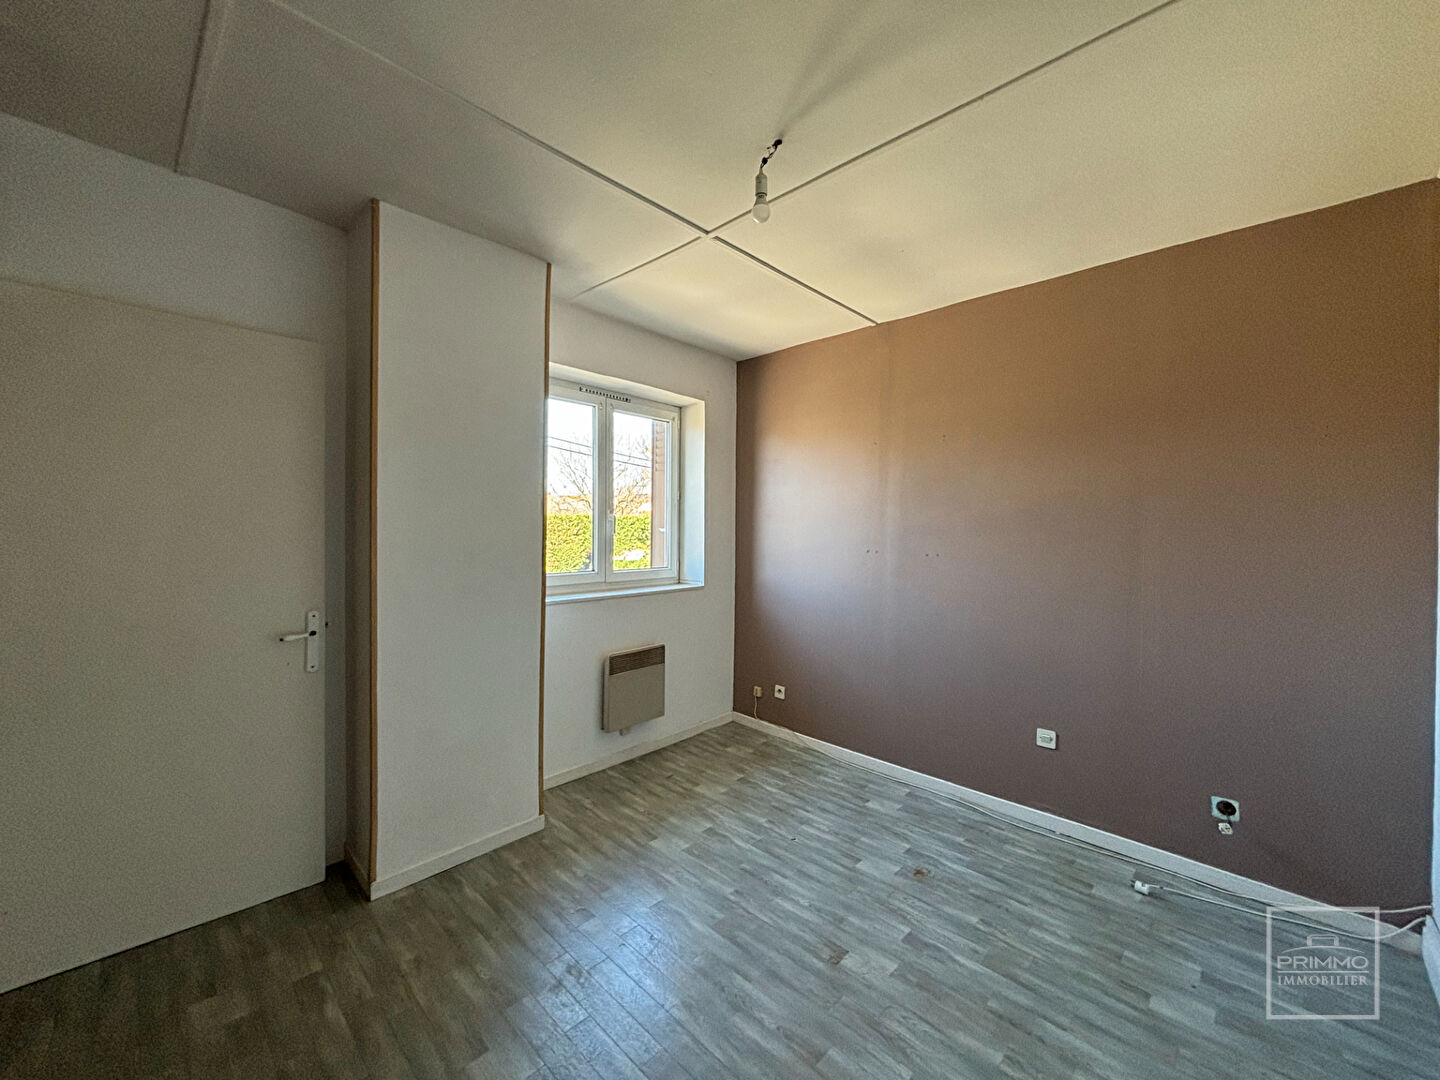 Appartement Sainte Consorce 3 pièces 50 m2 avec extérieur privatif